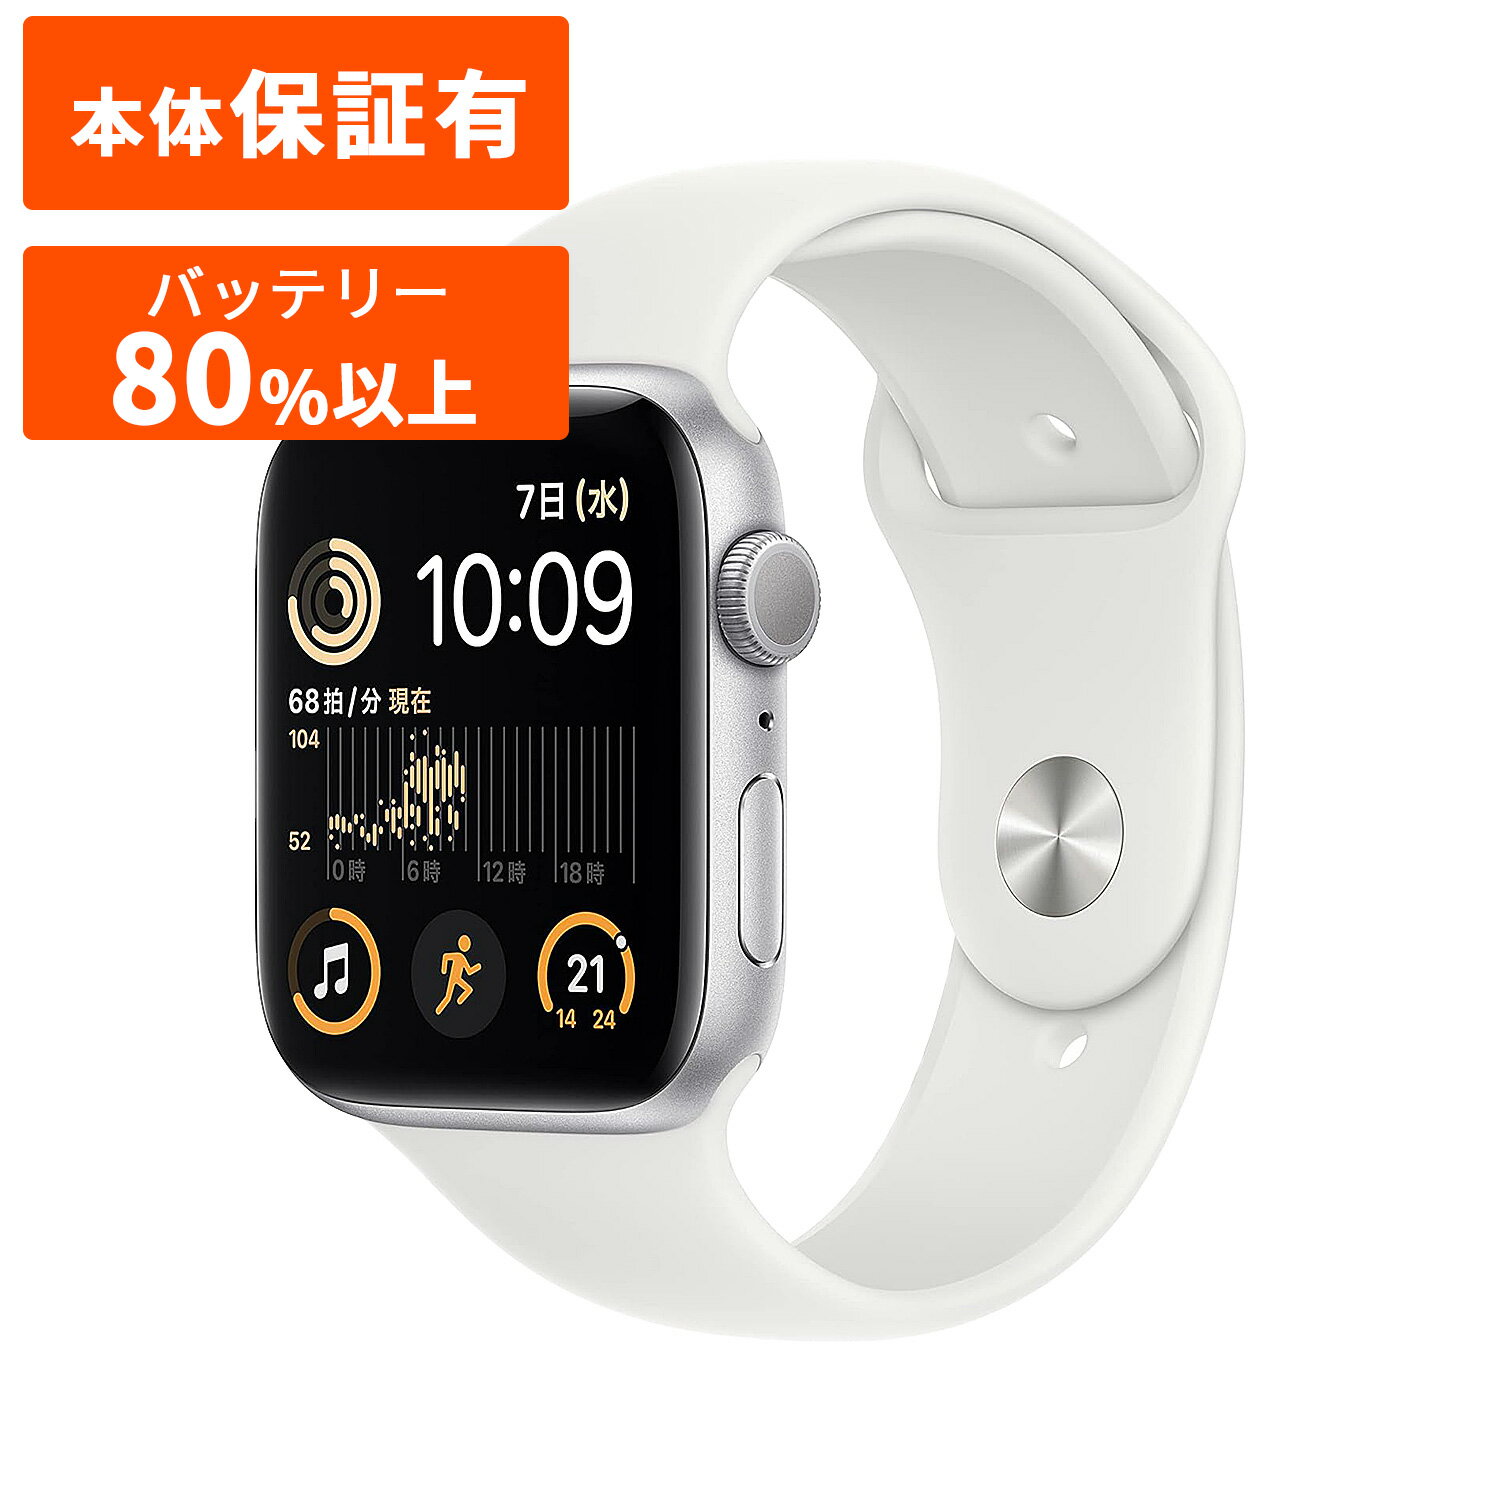 Apple Watch SE 第2世代 ミッドナイト ミッドナイト スターライト スターライト シルバー ホワイト 40mm 44mm GPSモデル S-Mサイズ Cランク アップル 【中古】 ウォッチ アップルウォッチ 【整…